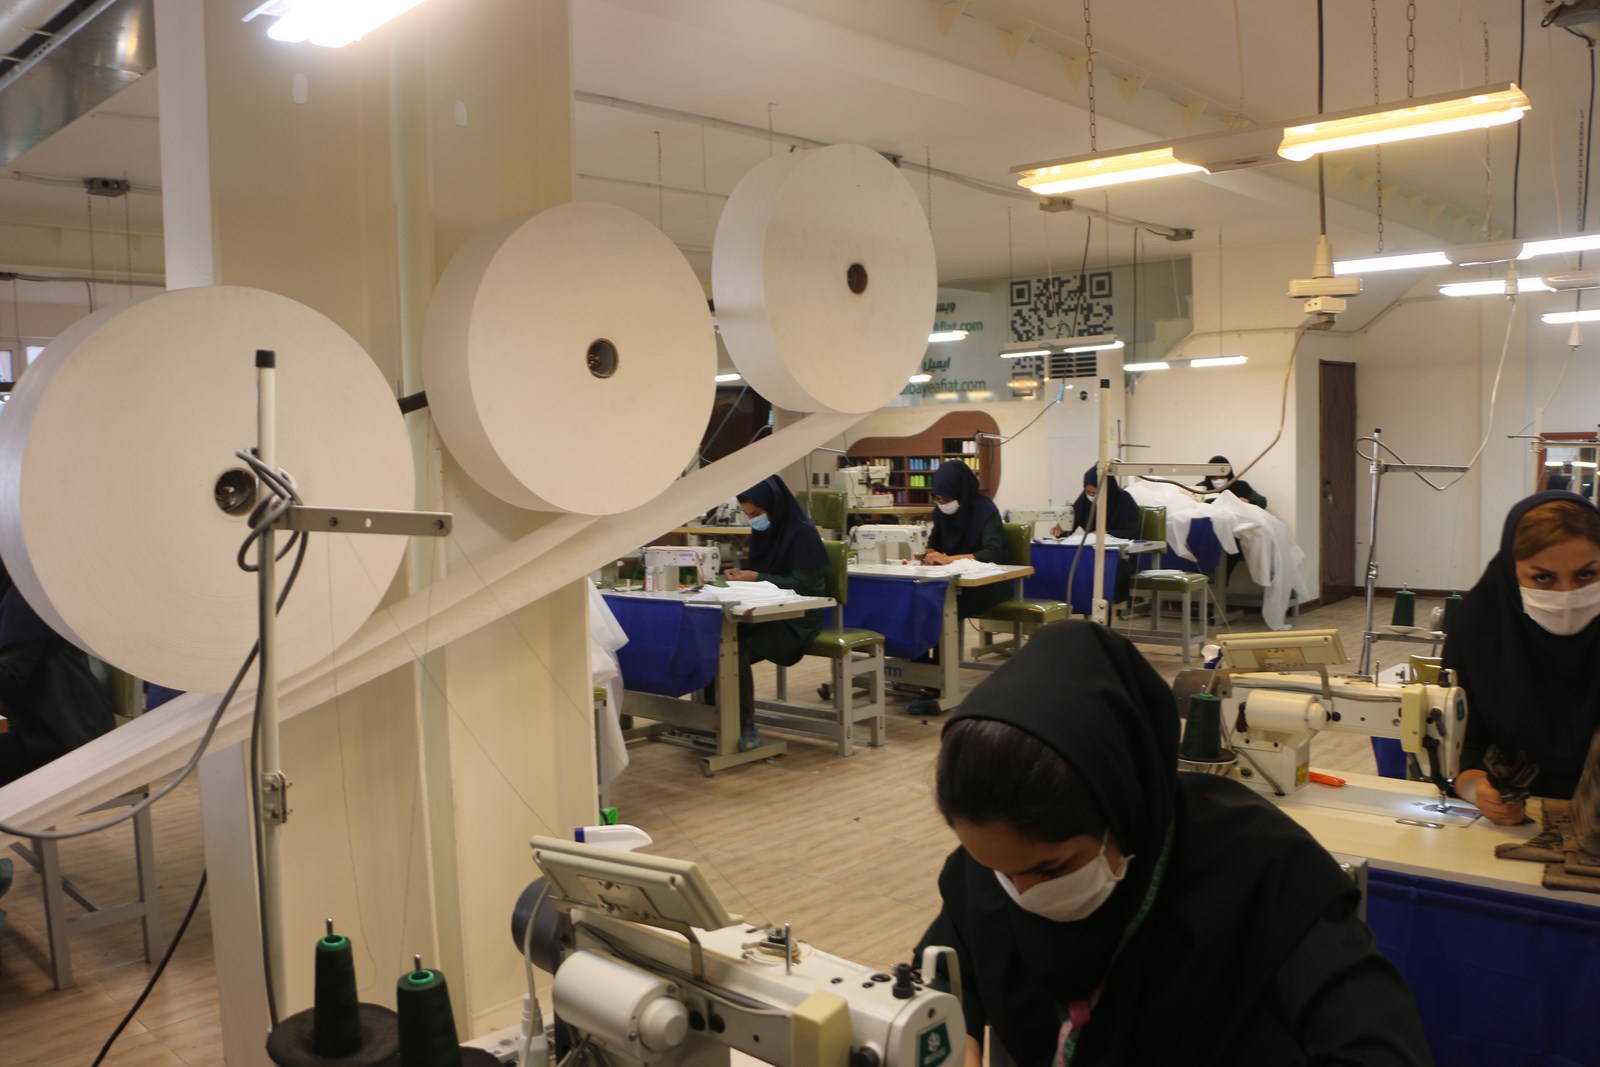 بهره برداری از چهارمین کارگاه تولید ماسک در اهواز